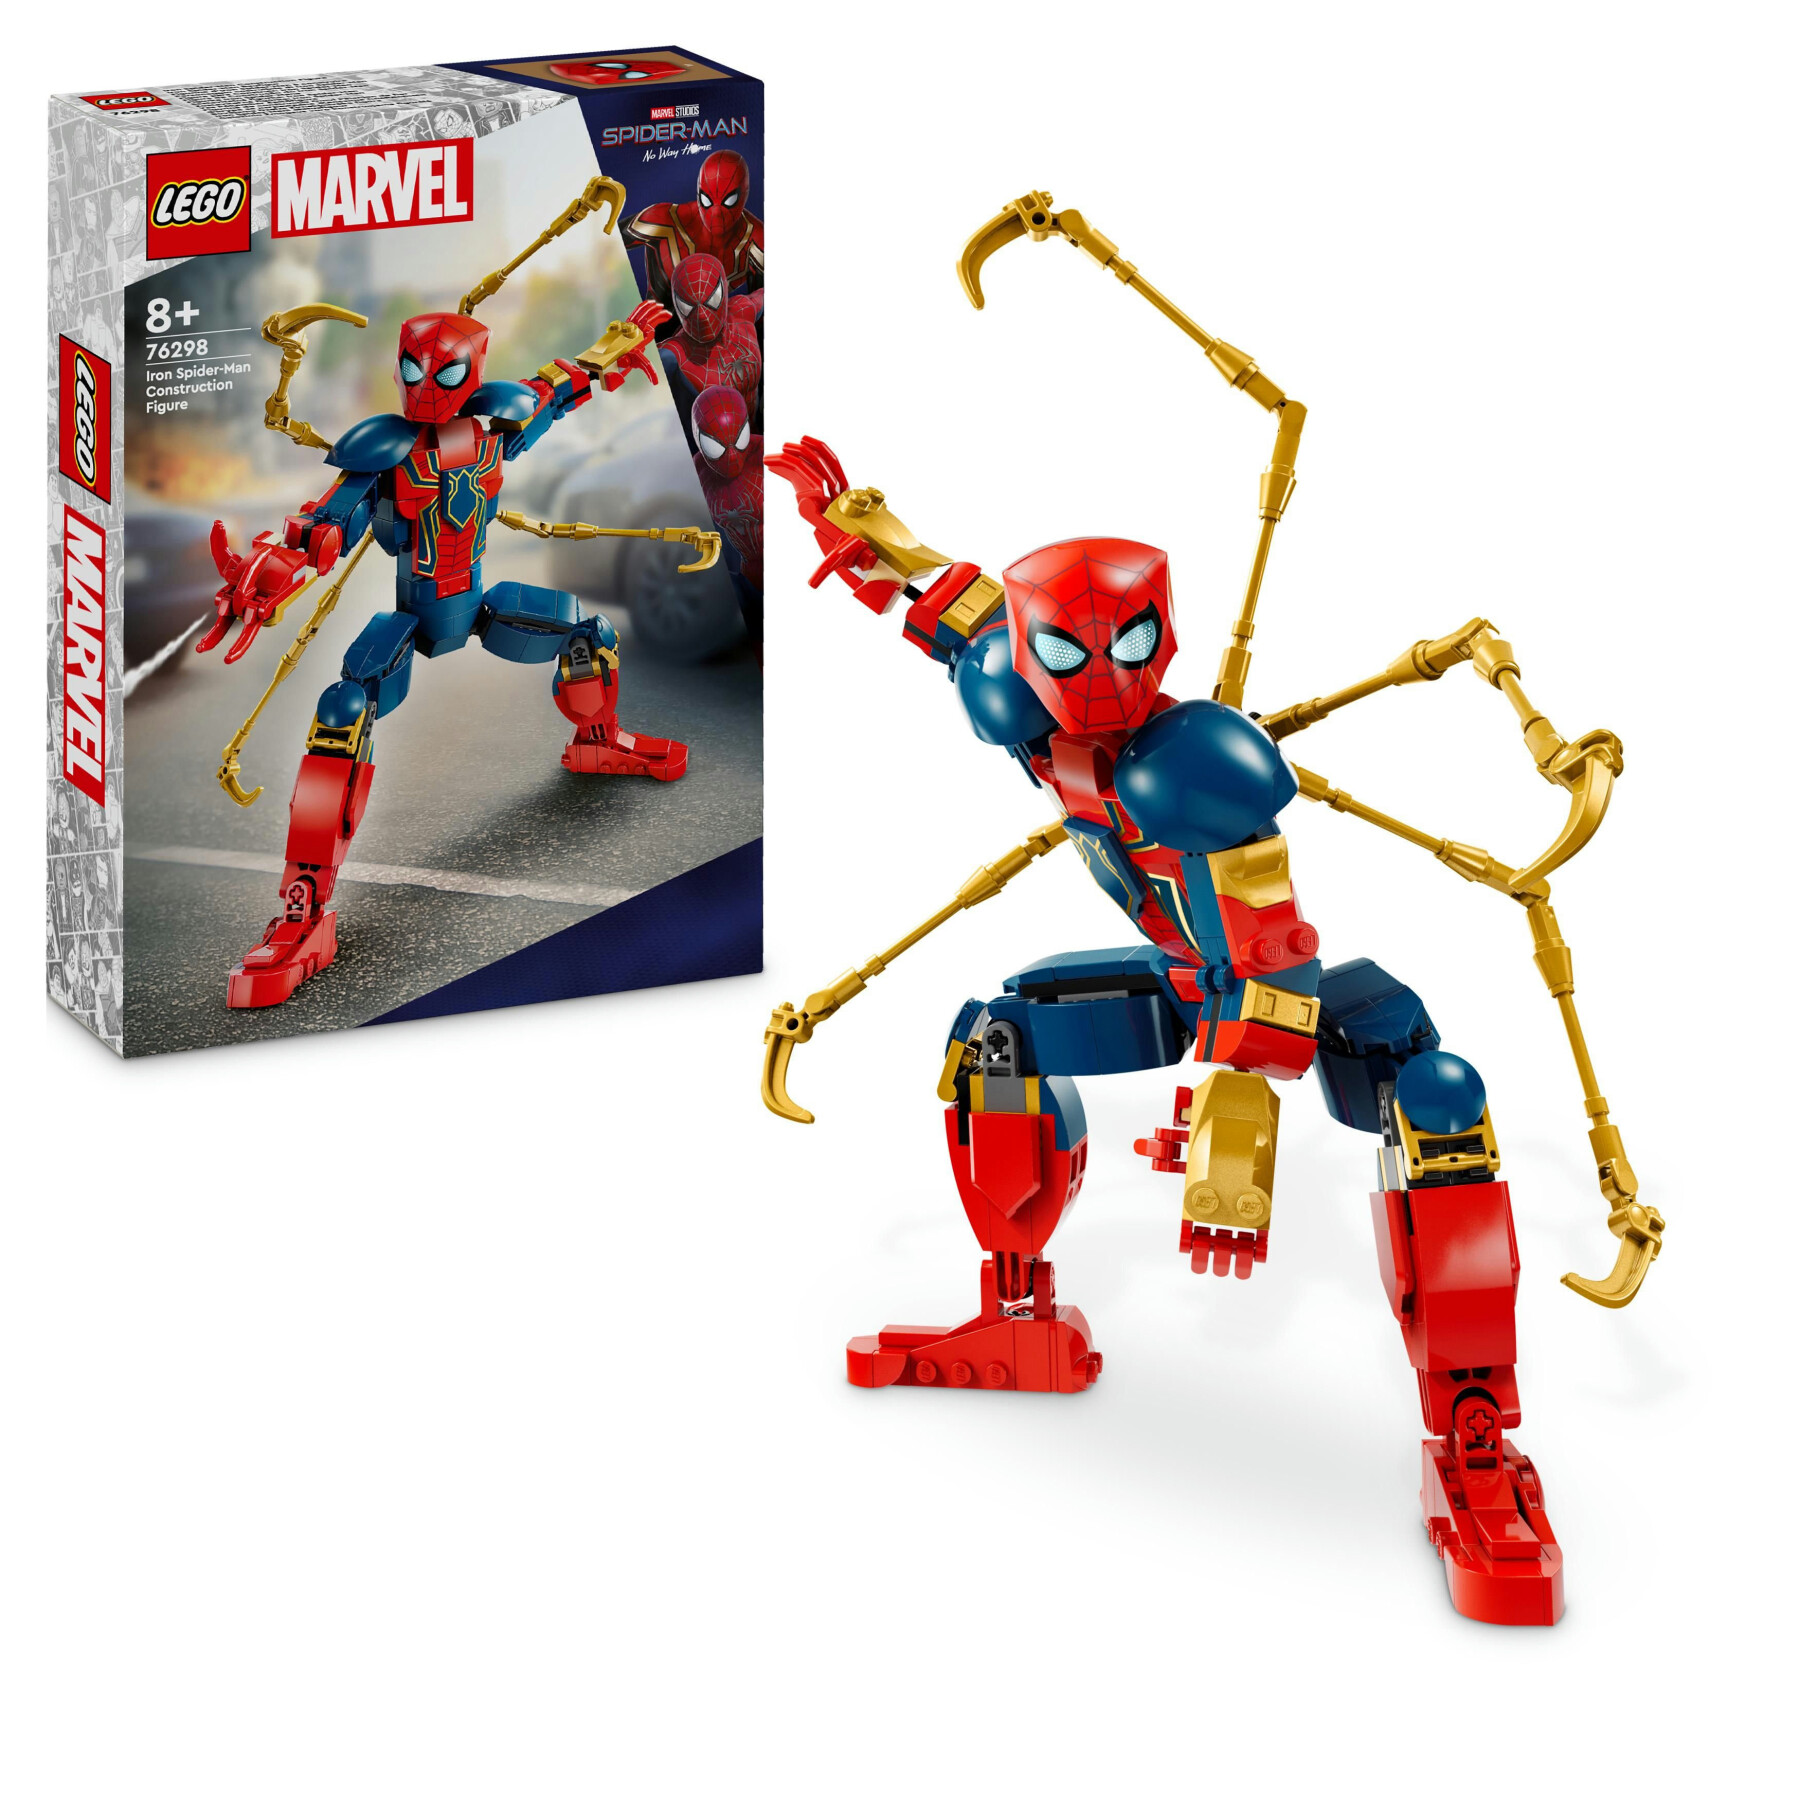 Lego marvel 76298 personaggio costruibile di iron spider-man, gioco per bambini 8+, supereroe snodabile con 4 braccia extra - LEGO SUPER HEROES